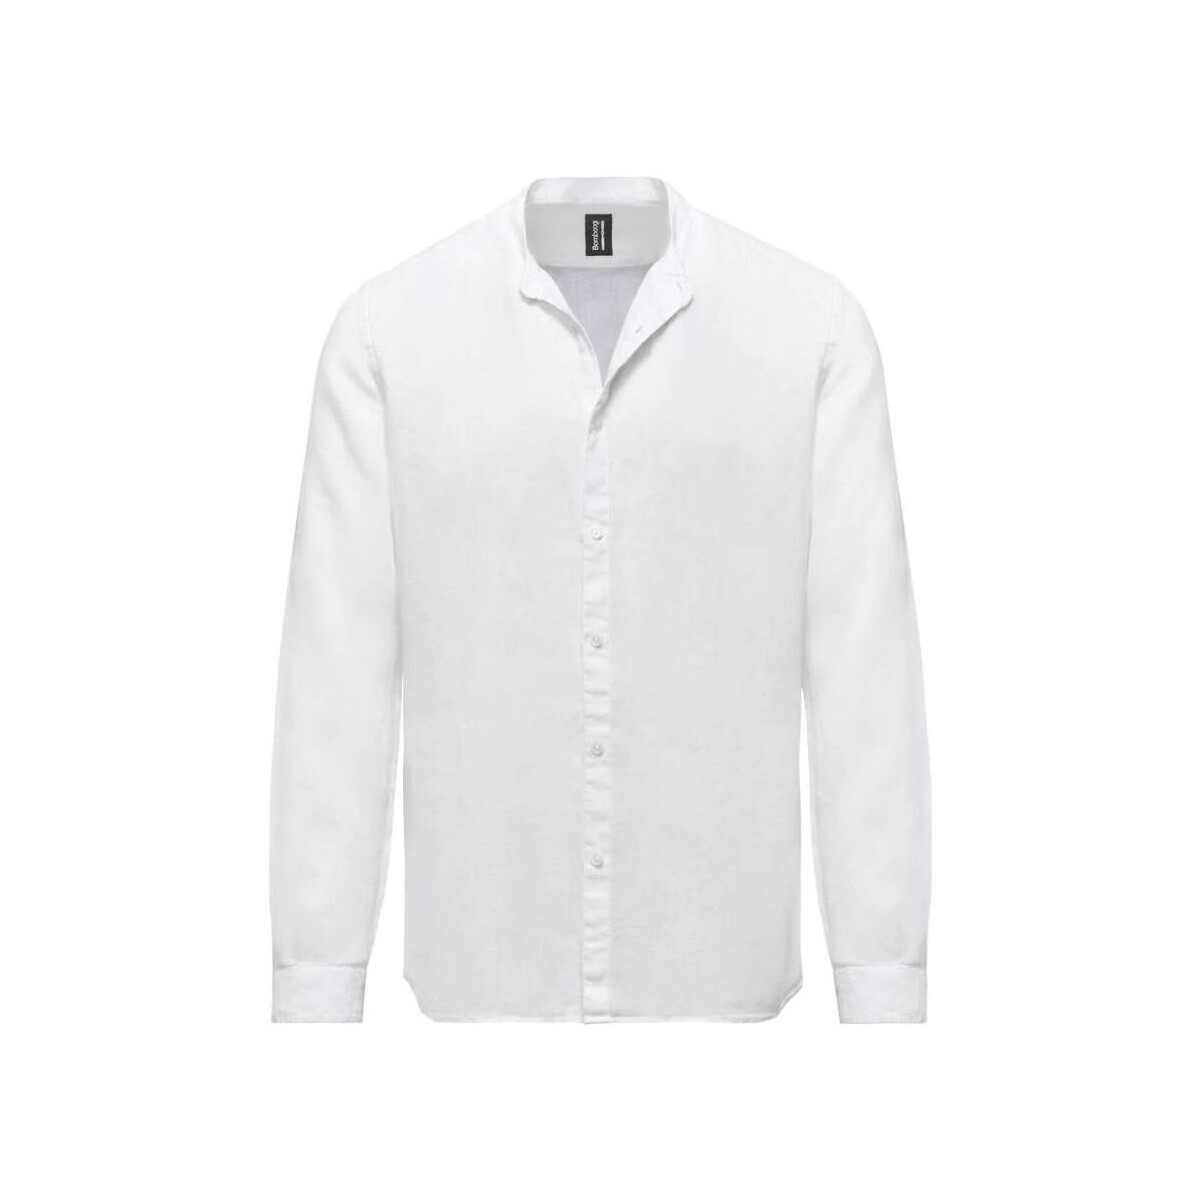 textil Hombre Camisas manga larga Bomboogie SM6401 T LI2-00 OPTIC WHITE Blanco